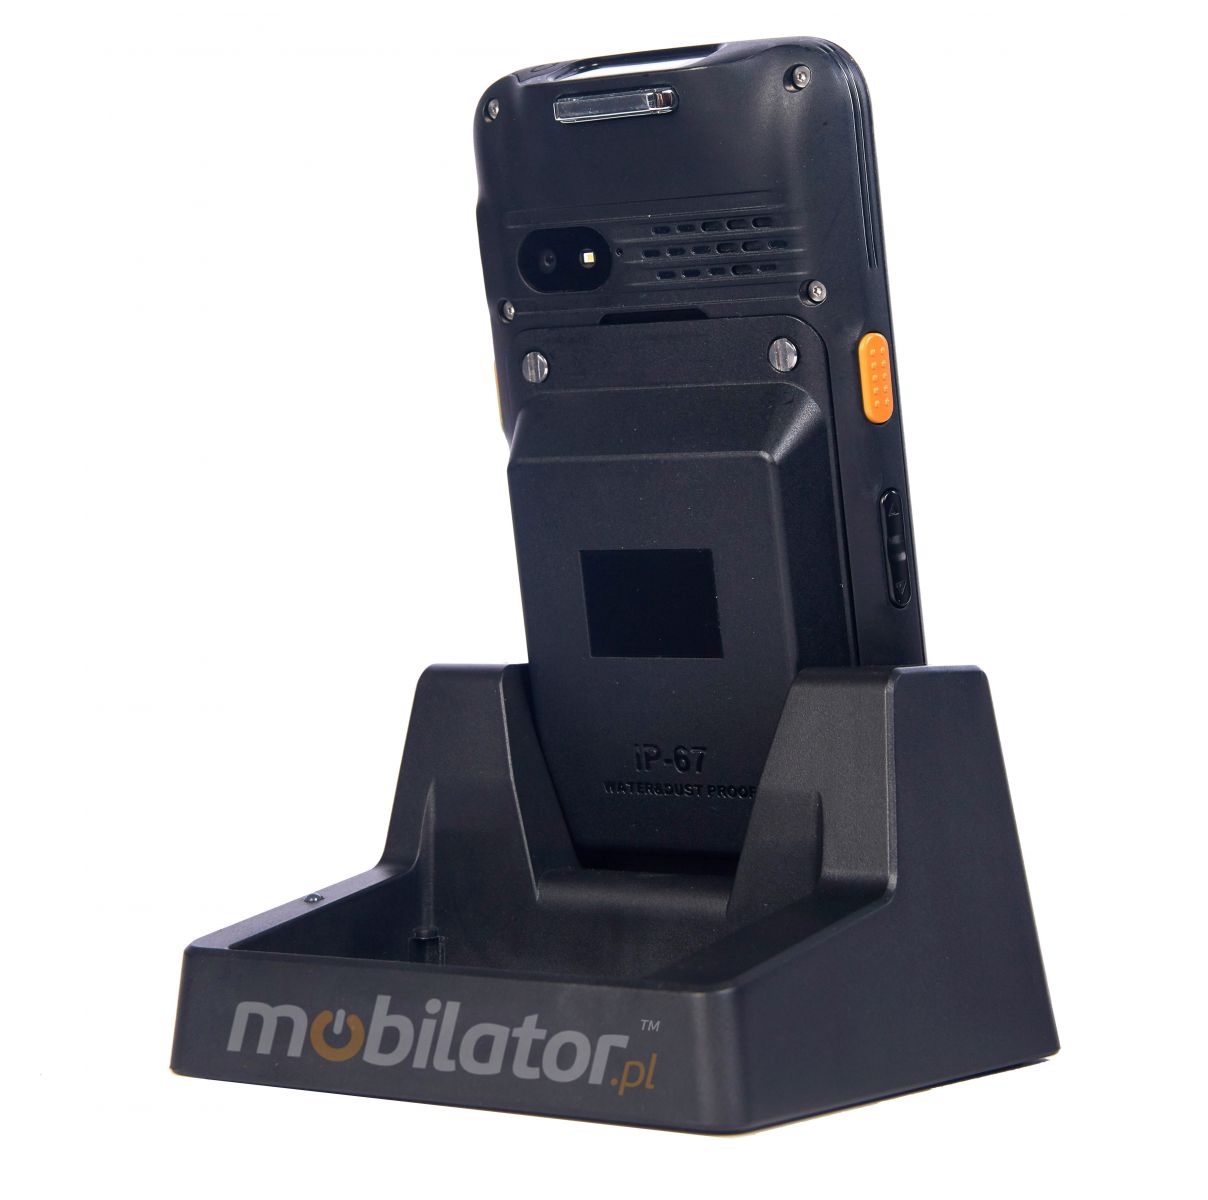 MobiPad V77 v.2 - Wodoszczelny (IP67) kolektor danych z technologi NFC oraz skanerem 2D (SE4710) z uchwytem pistoletowym